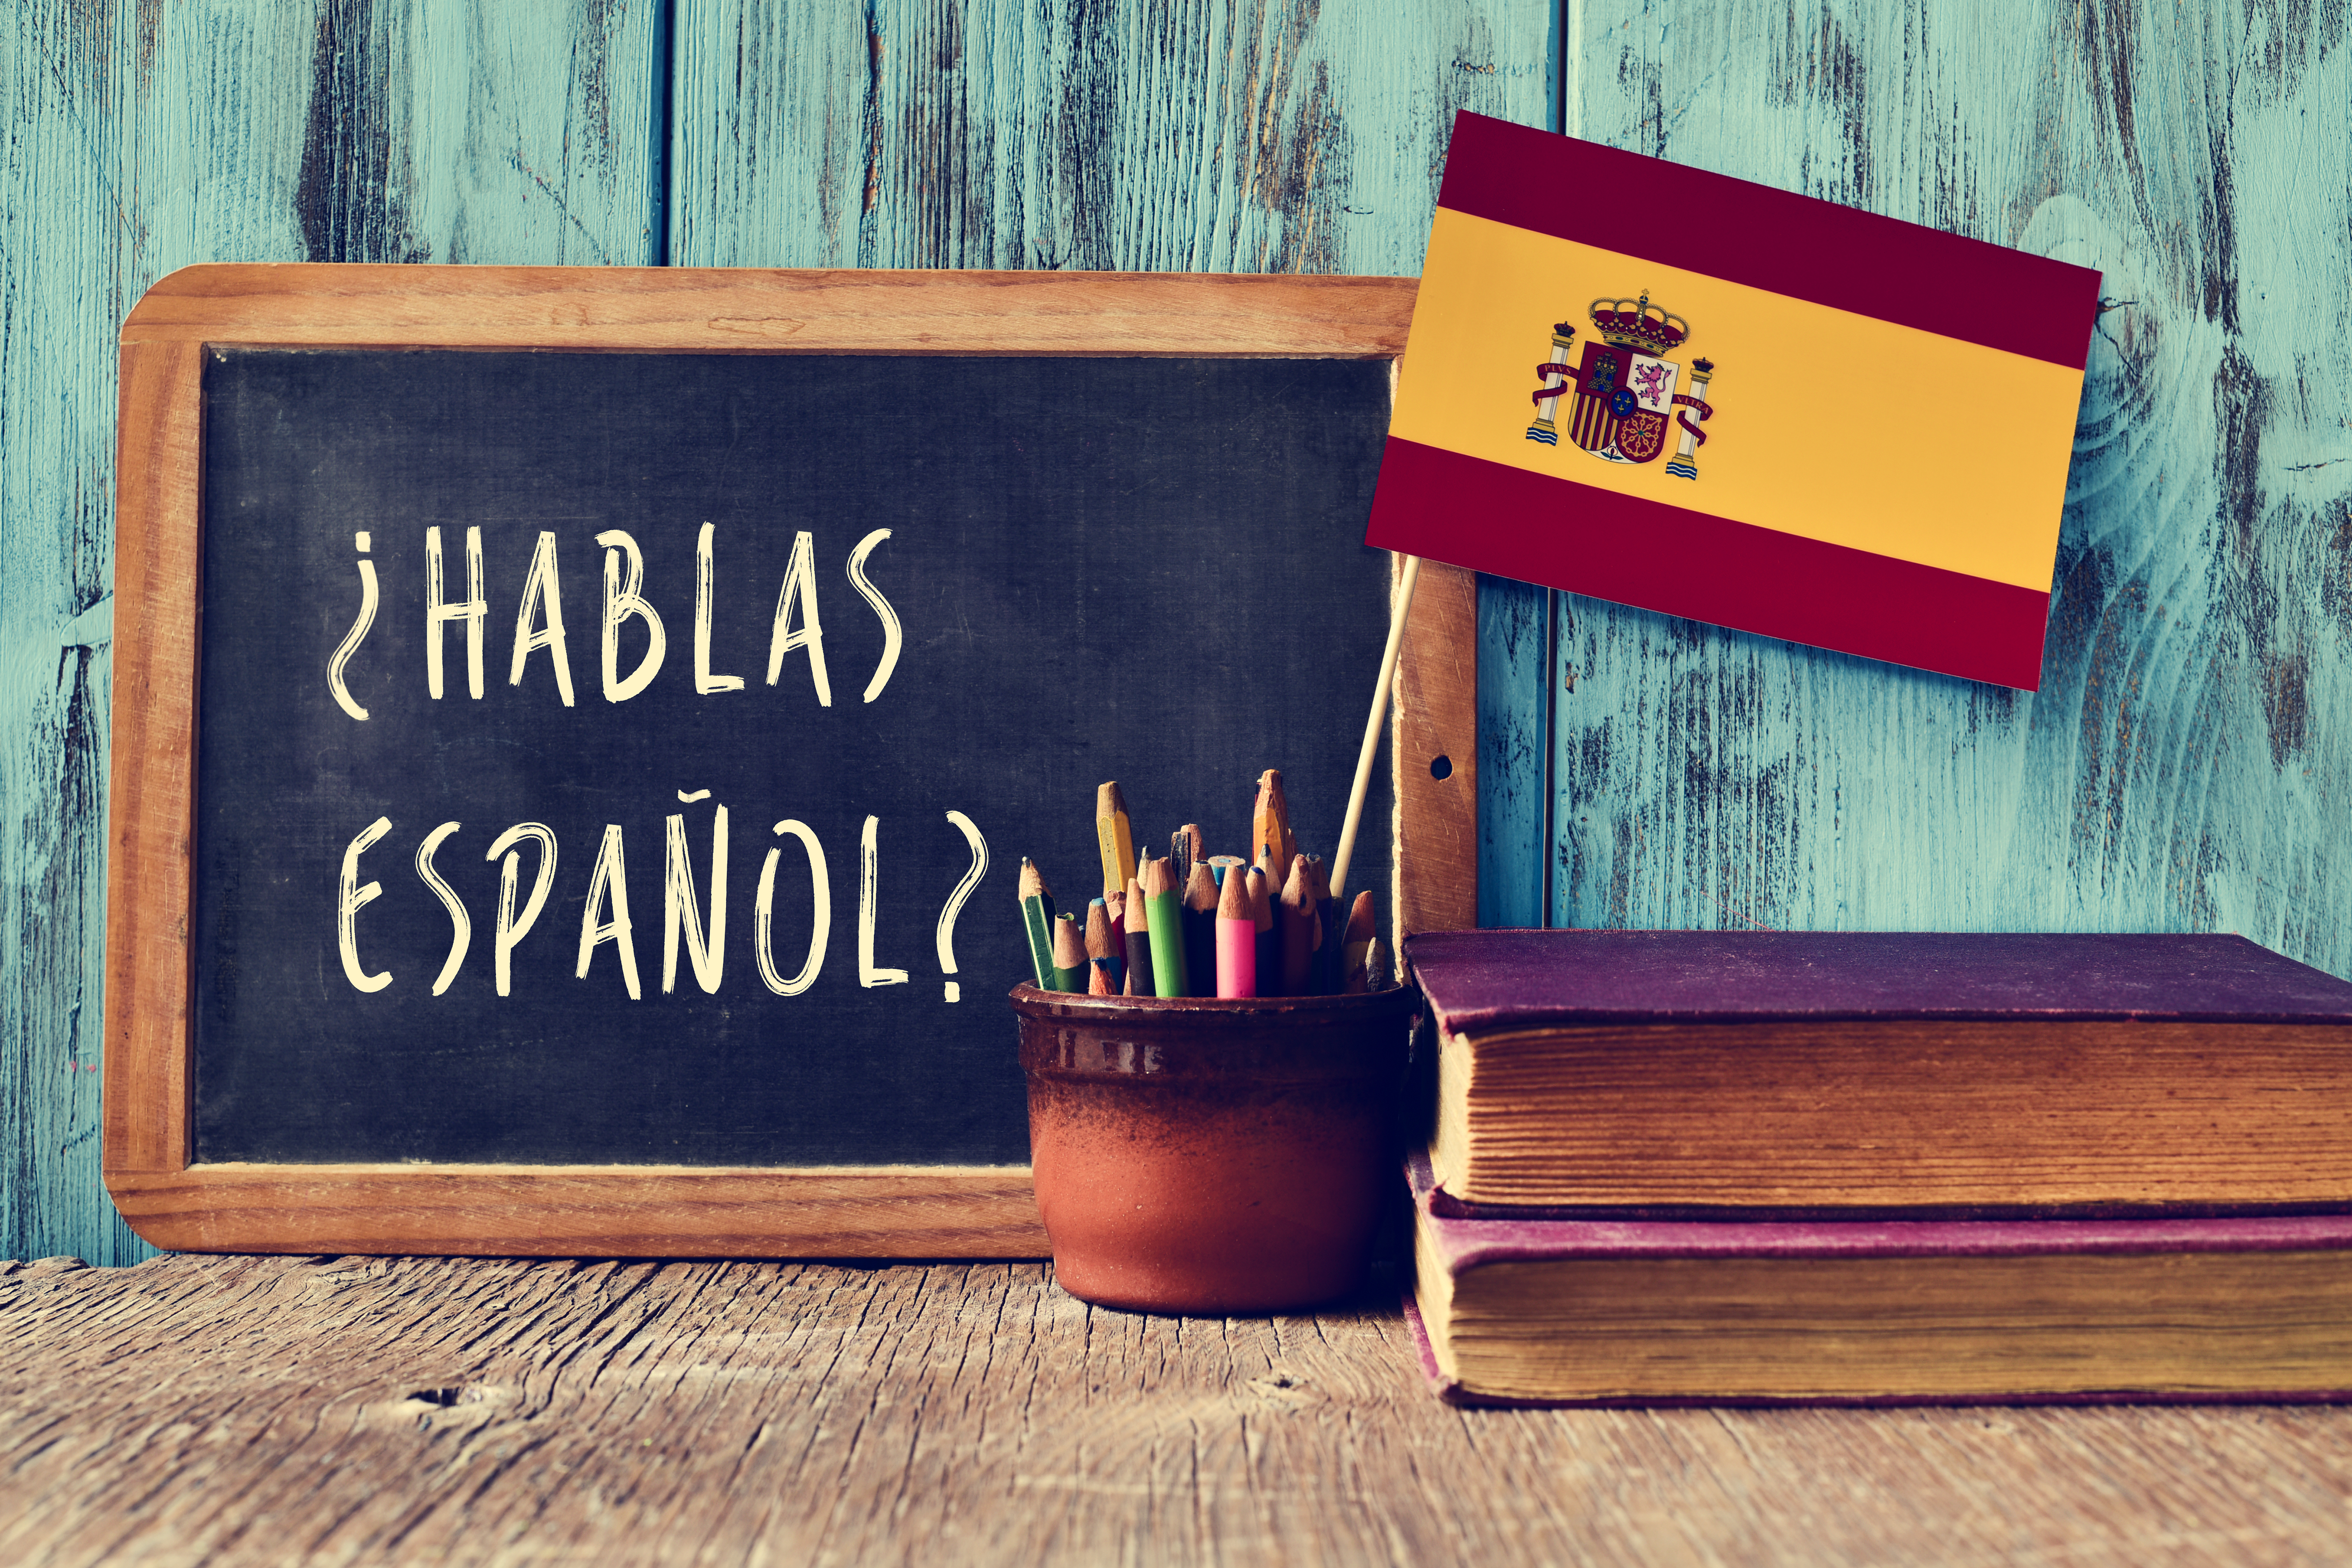 Cursos de español para extranjeros